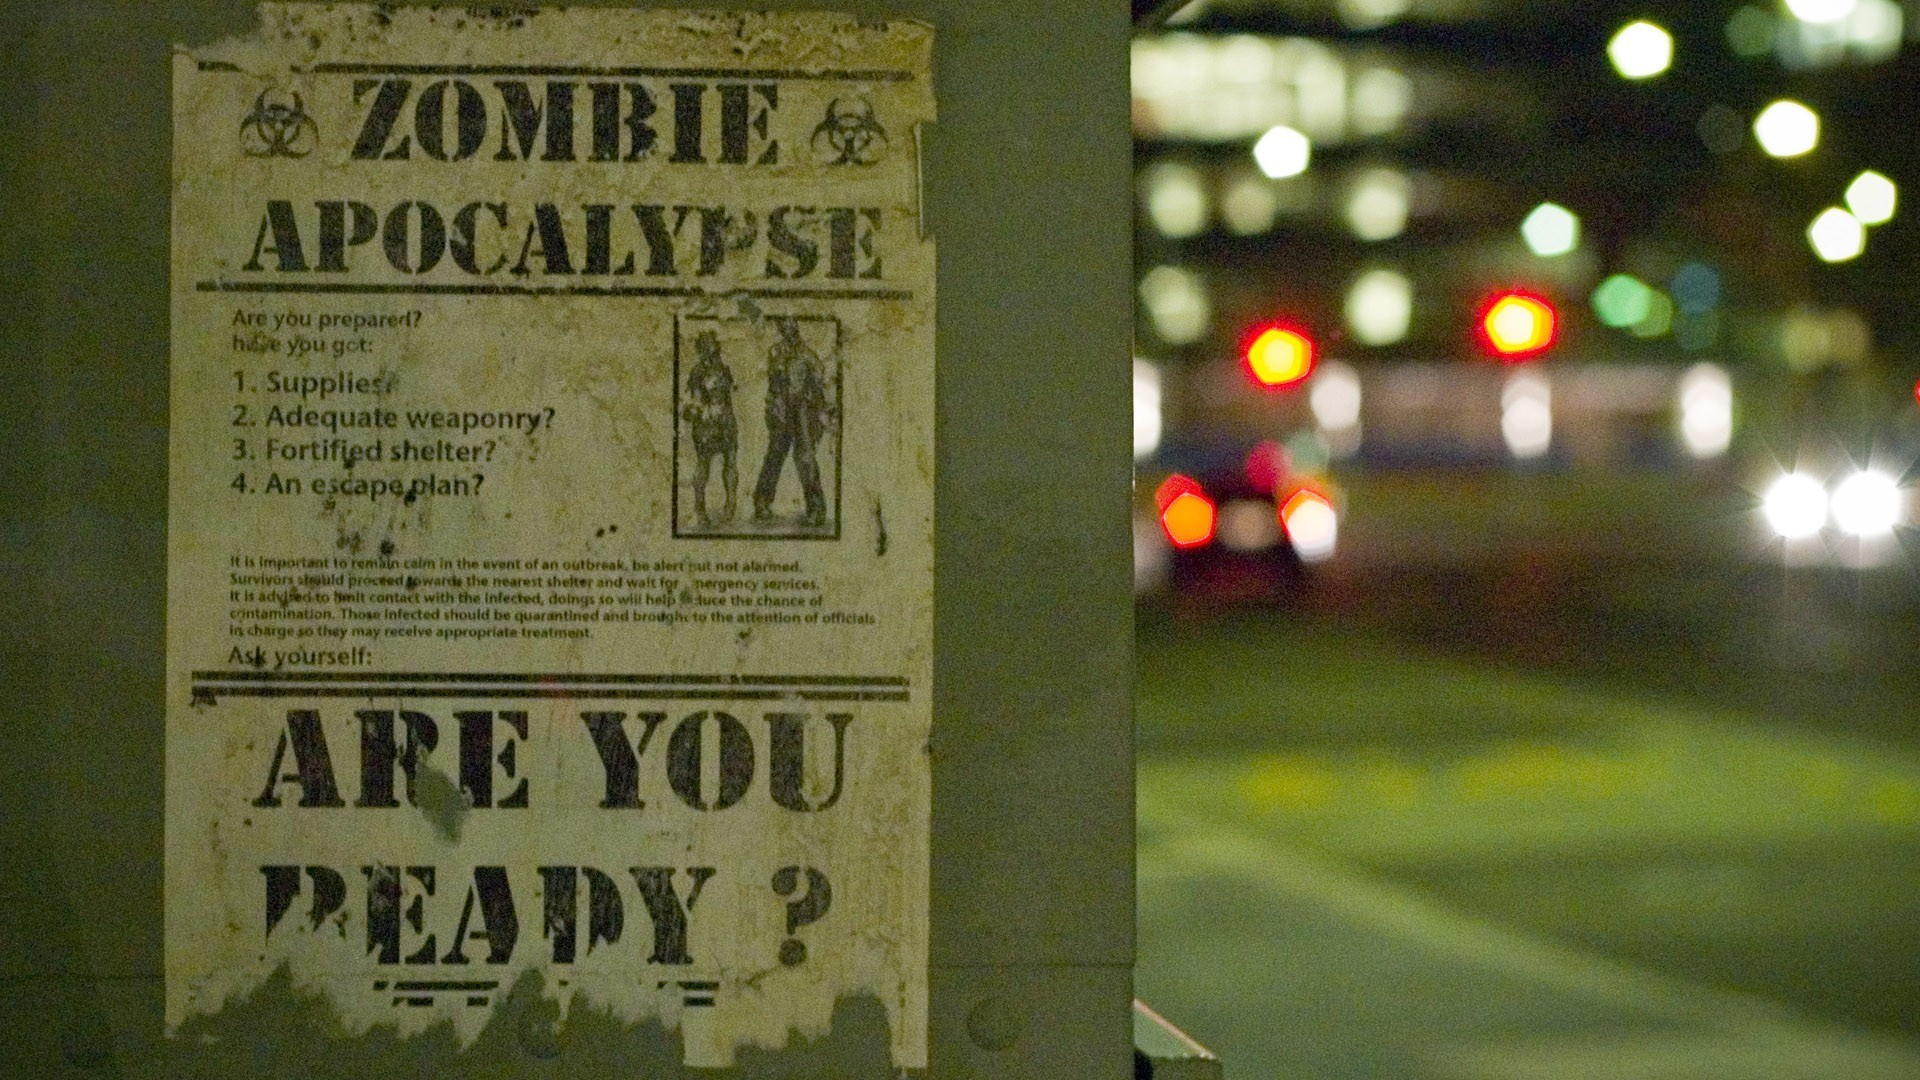 1920x1080 Zombie apocalypse wallpaper